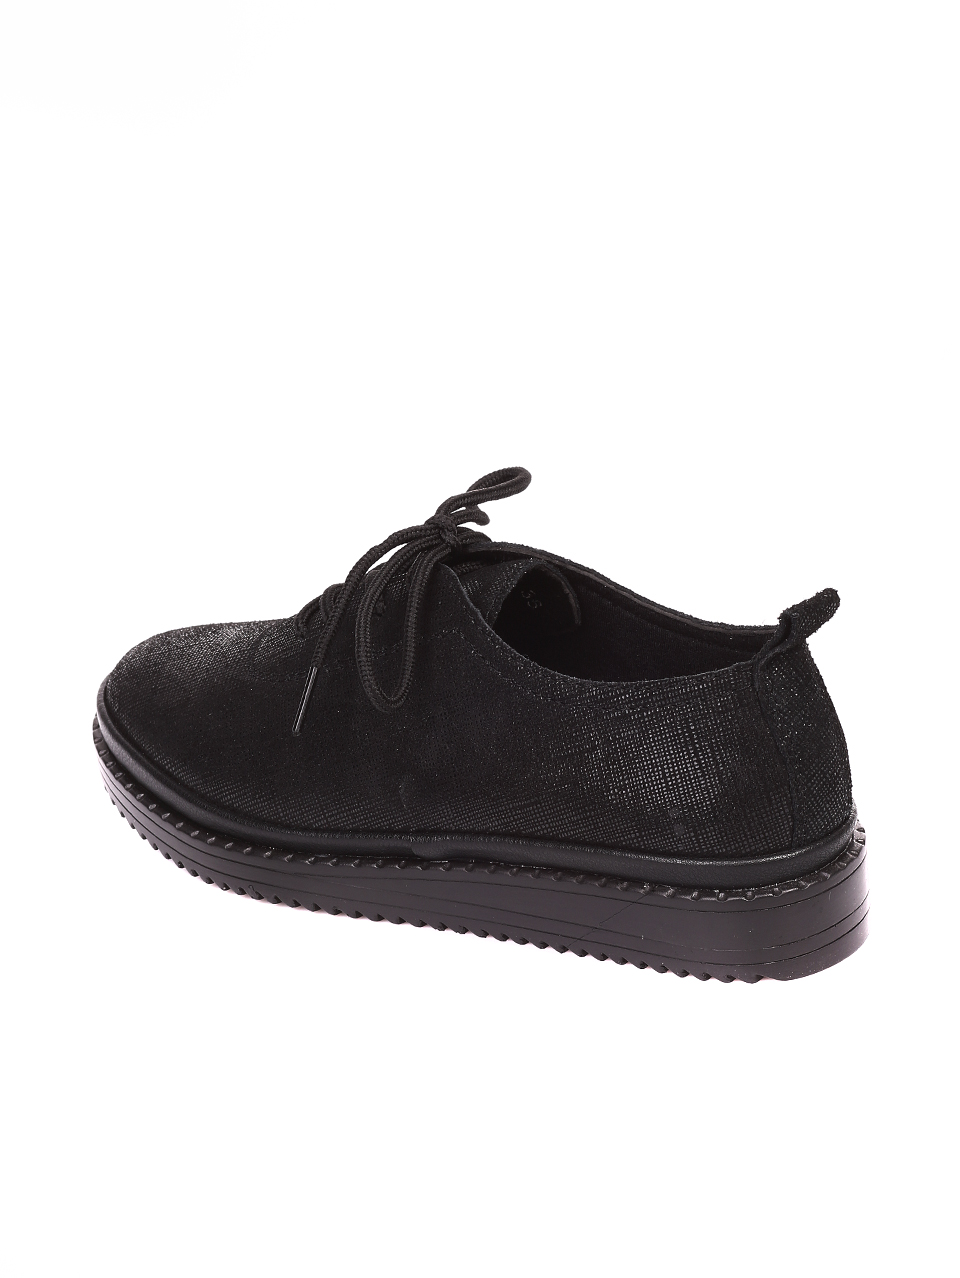 Ежедневни дамски обувки от естествена кожа в черно 3AF-20647 black